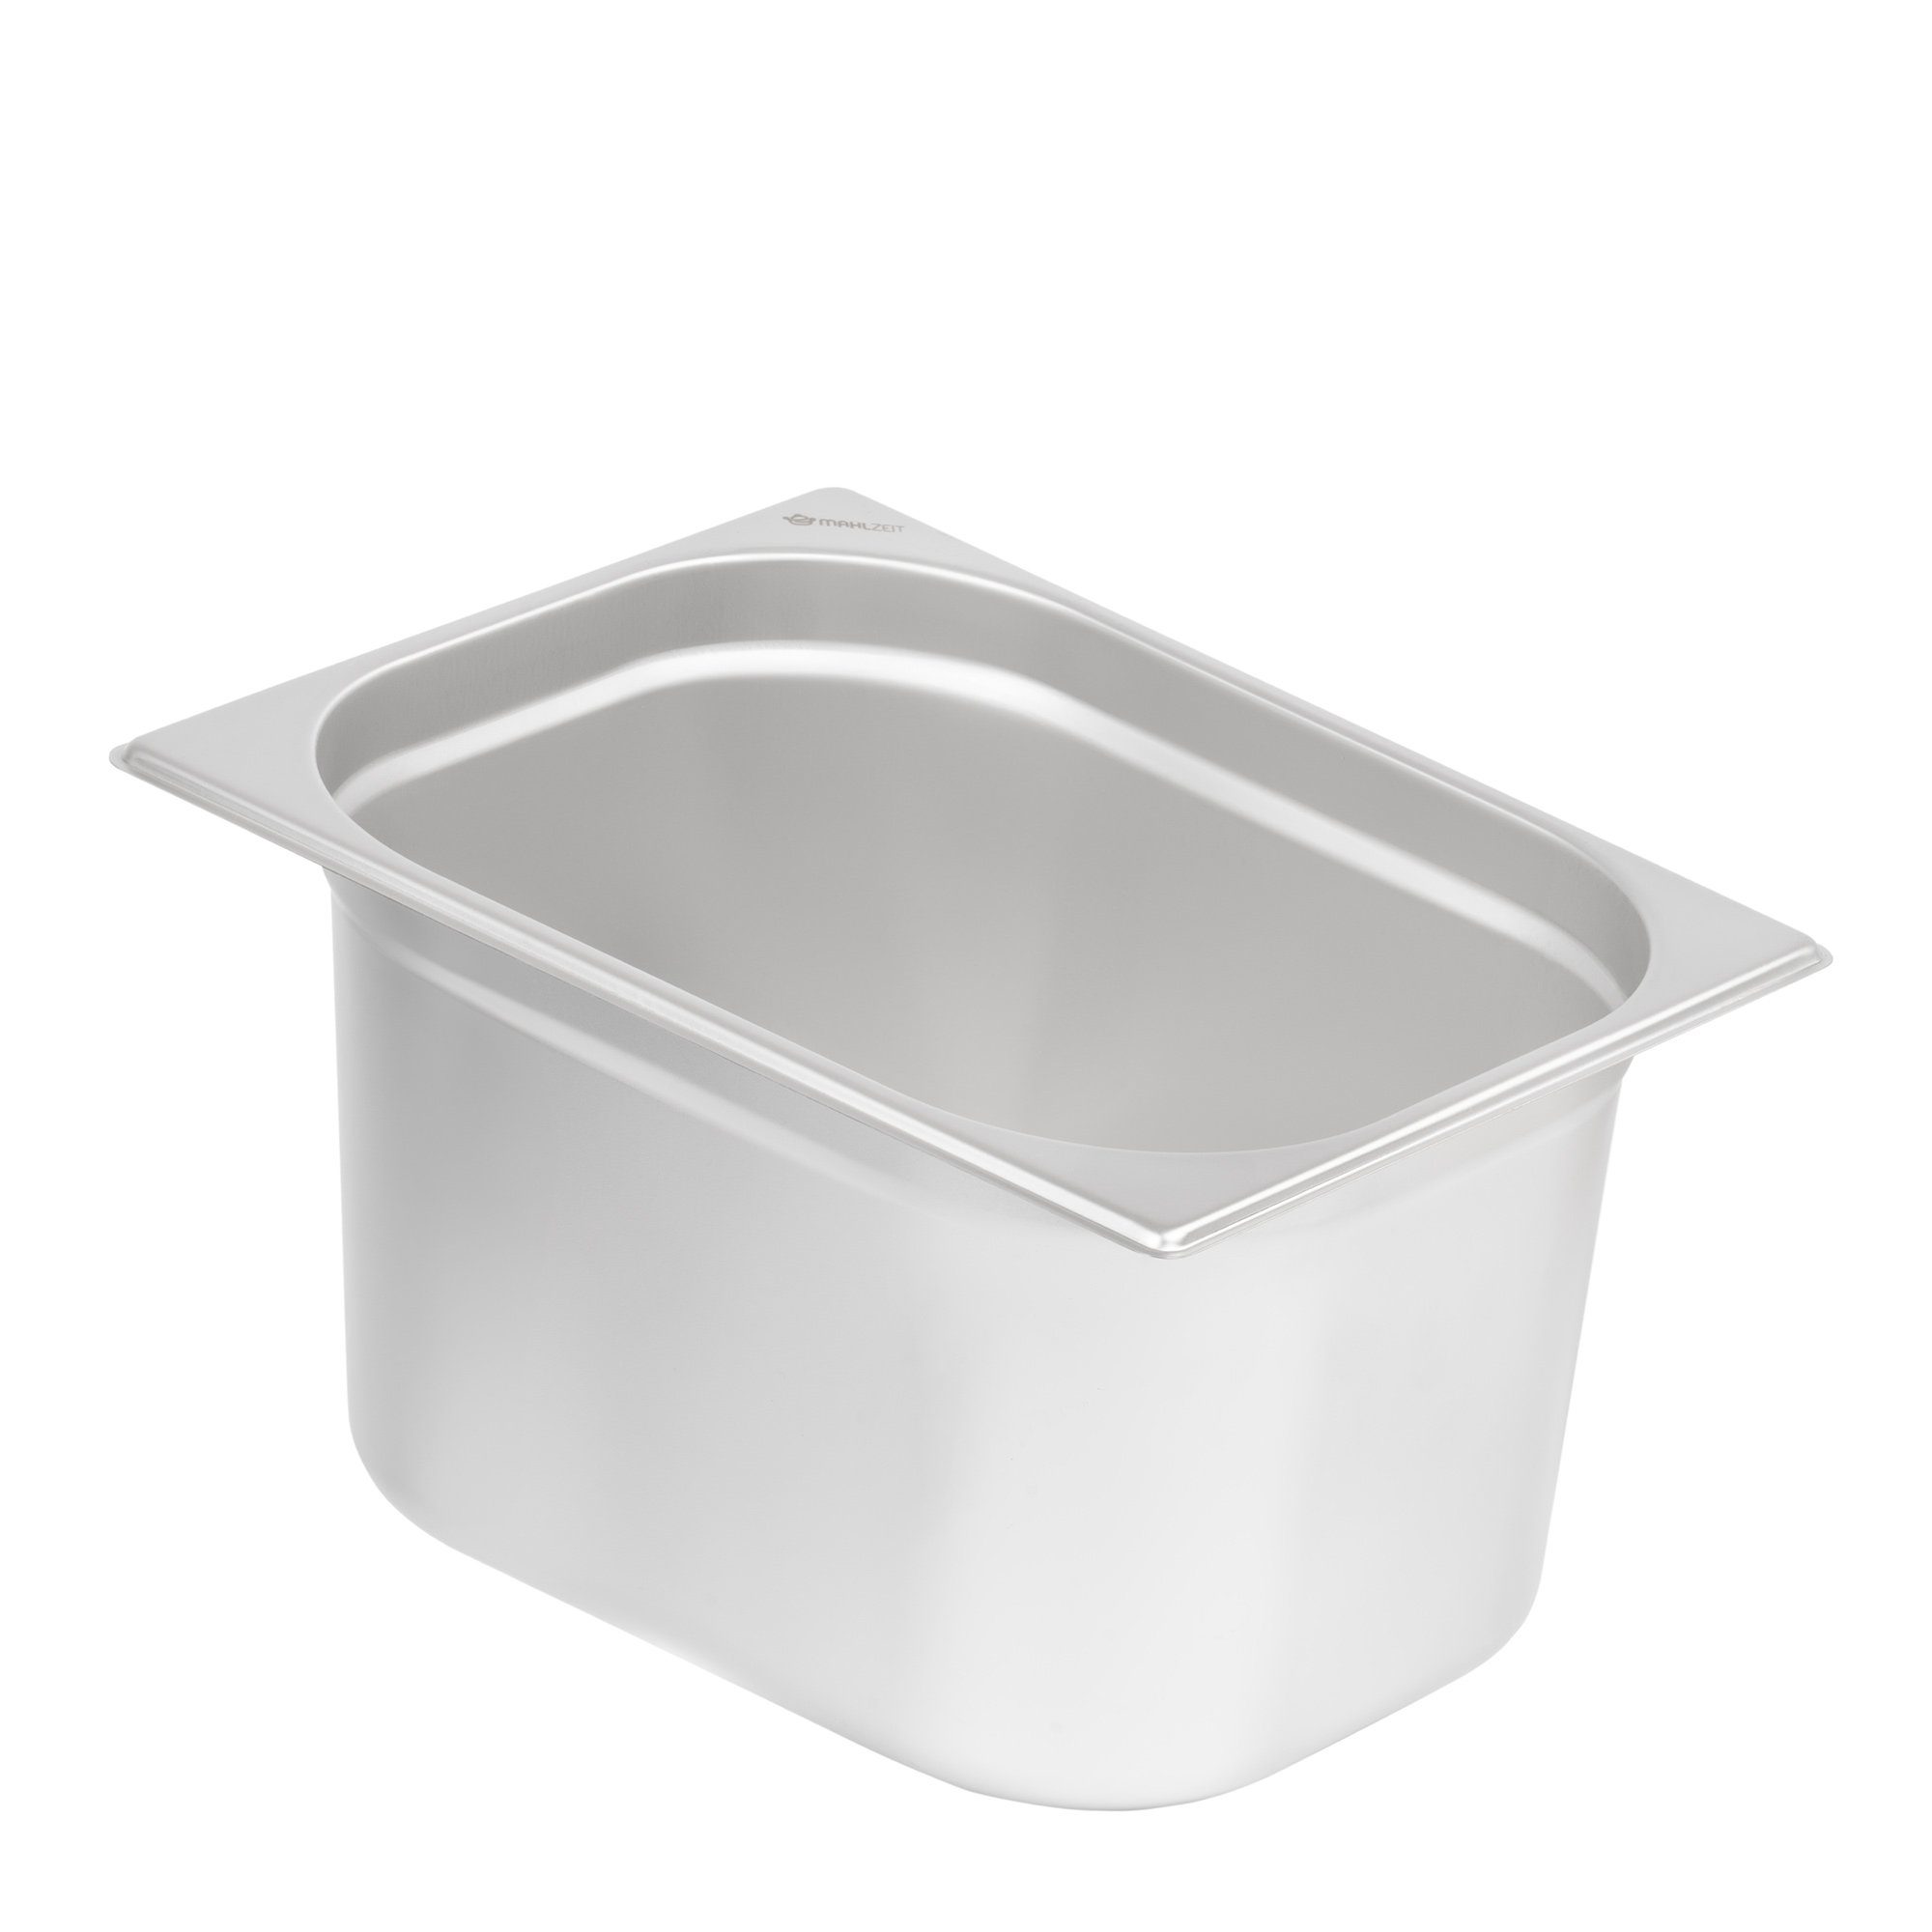 Mahlzeit Thermobehälter GN Behälter 1/2, Höhe 200 mm, Edelstahl Gastronomiebehälter, Edelstahl, für Chafing Dish